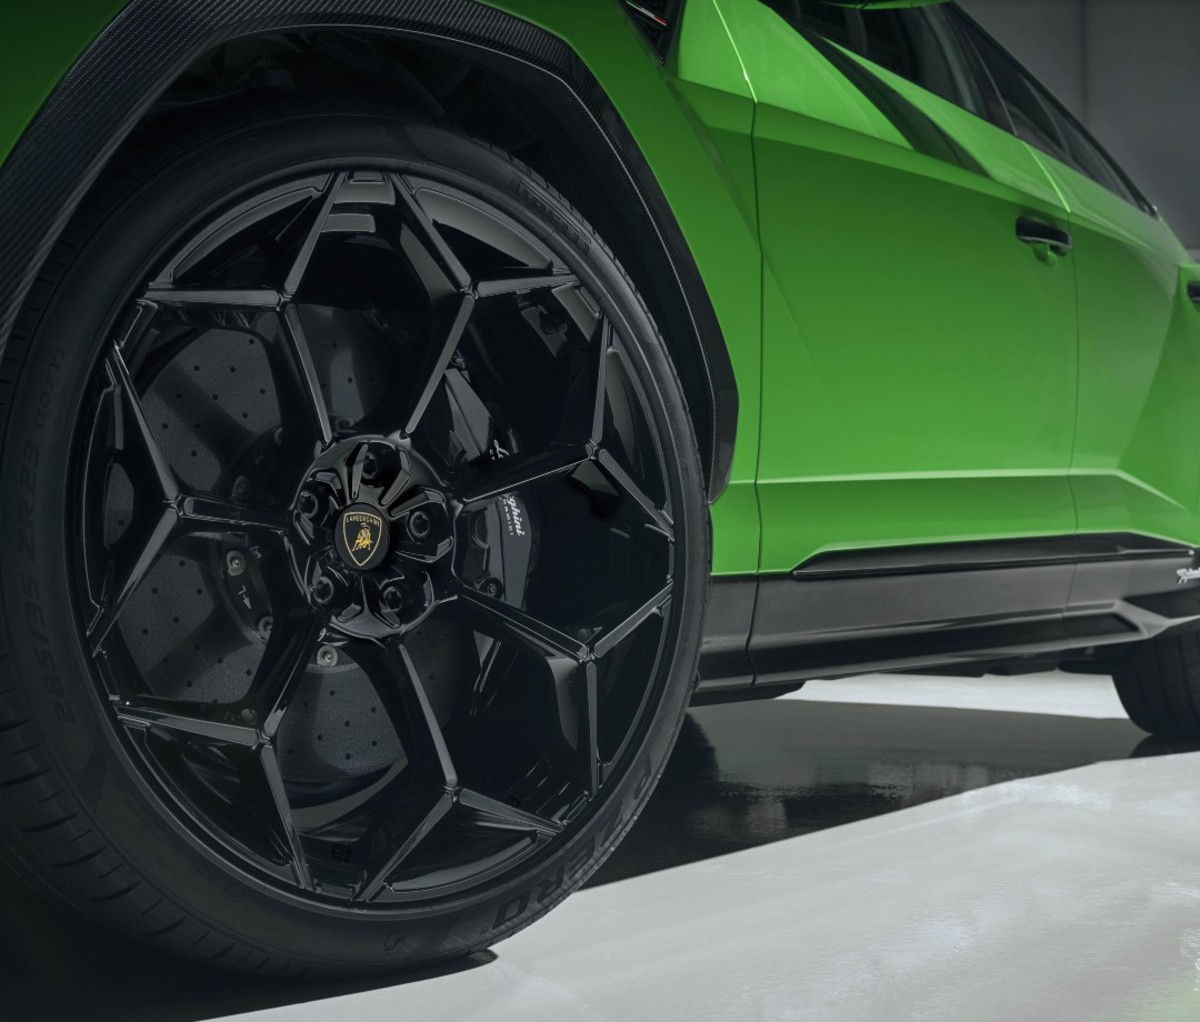 Closeup of green sports car's tires